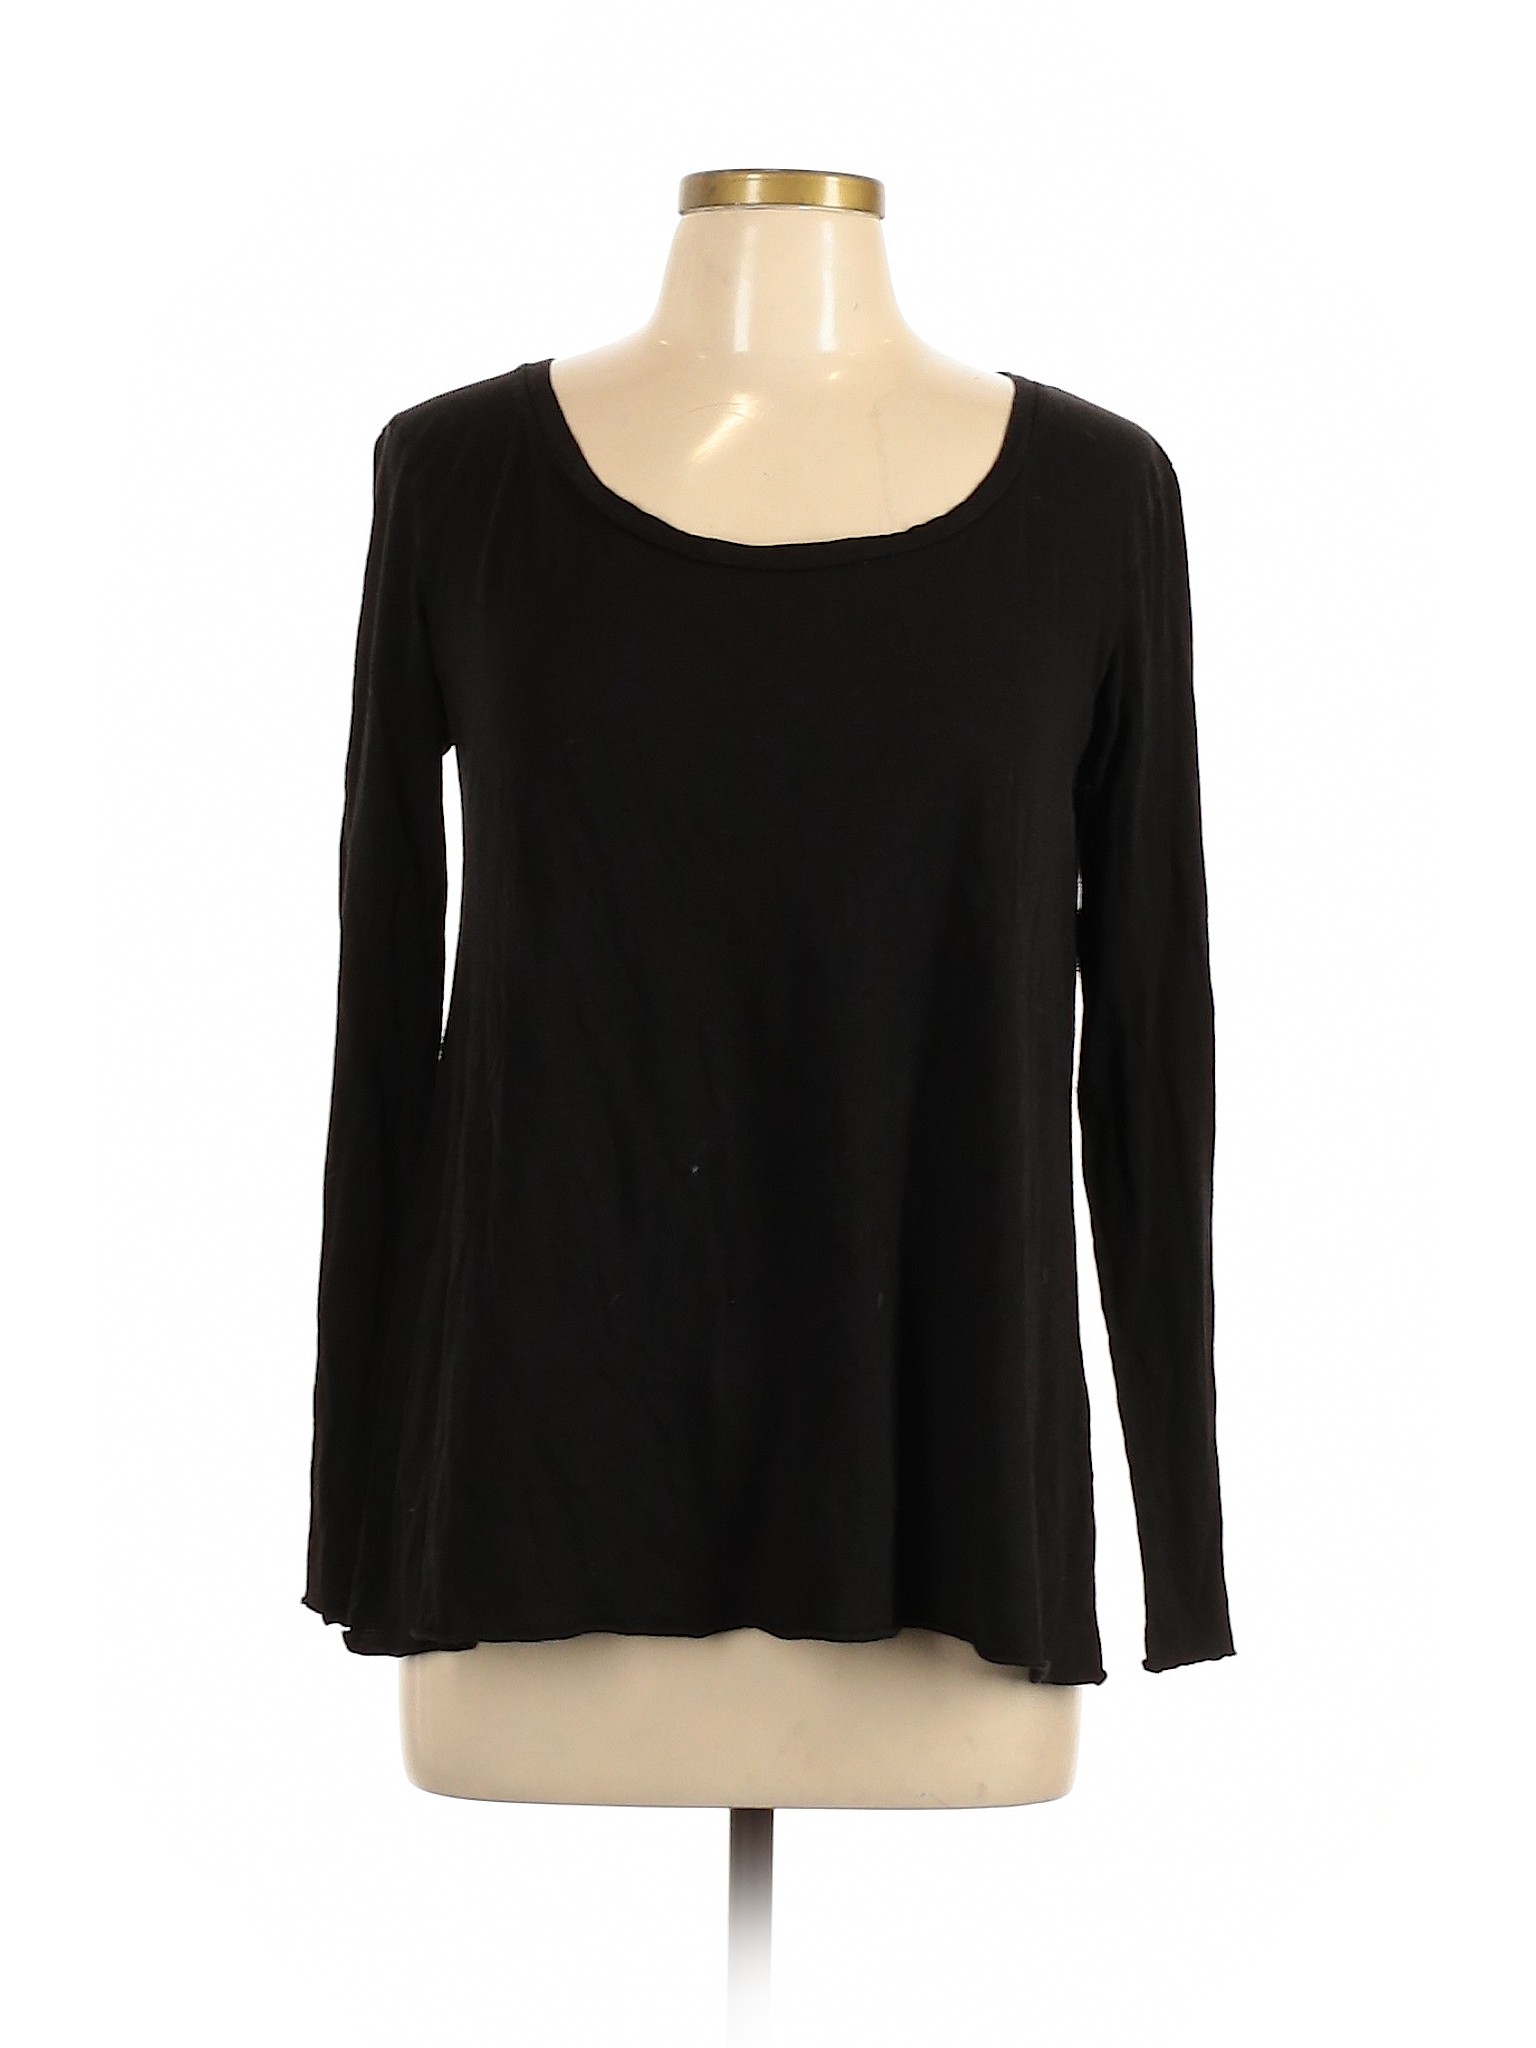 Zara Women Black Long Sleeve T-Shirt L | eBay